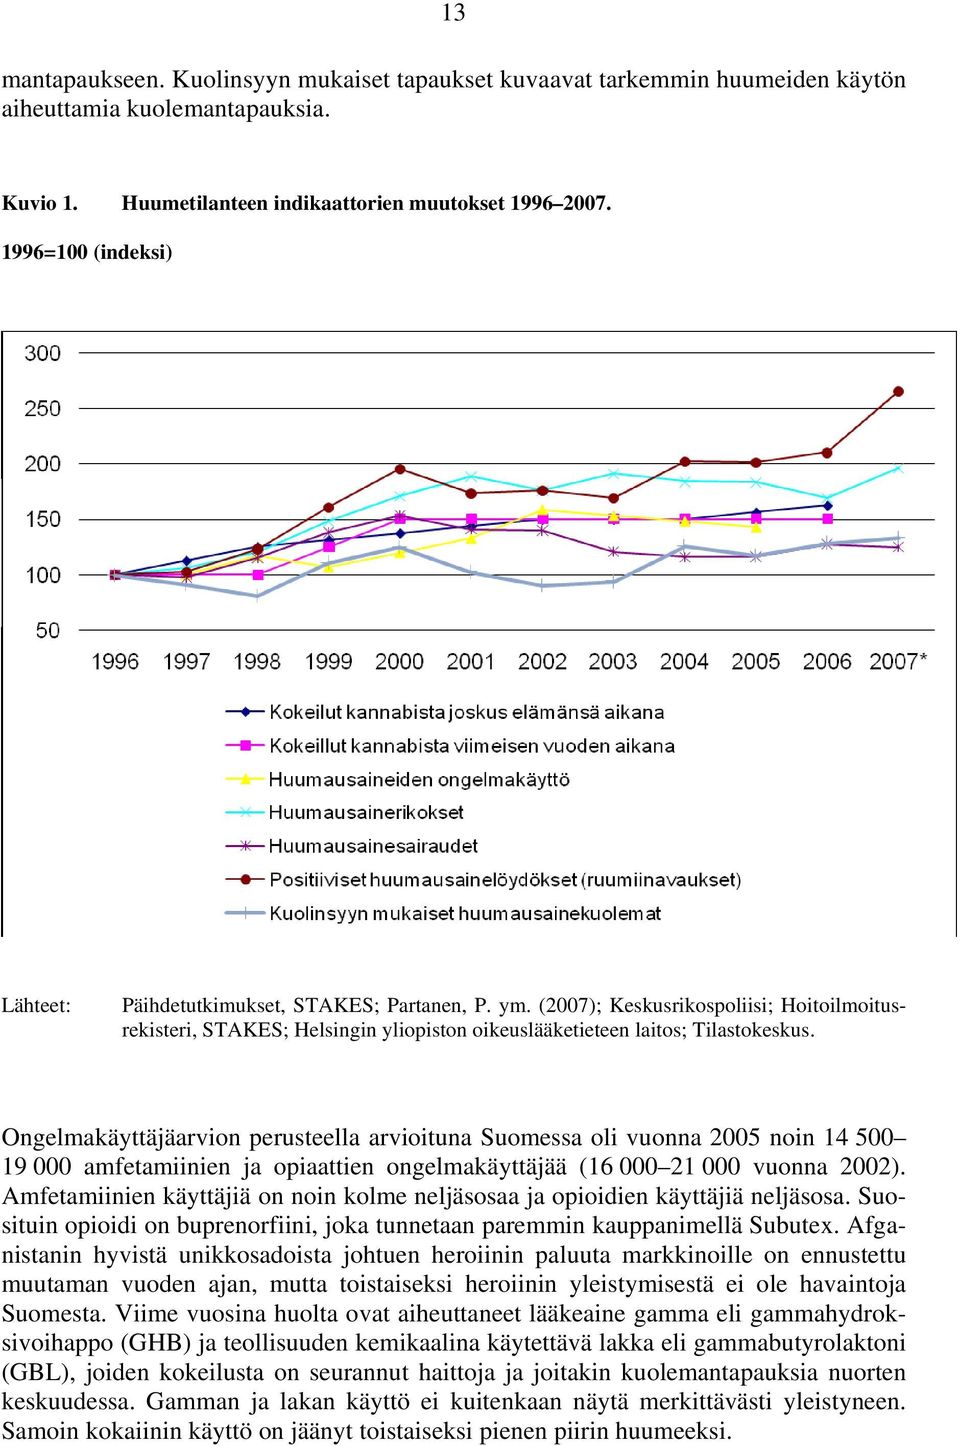 Ongelmakäyttäjäarvion perusteella arvioituna Suomessa oli vuonna 2005 noin 14 500 19 000 amfetamiinien ja opiaattien ongelmakäyttäjää (16 000 21 000 vuonna 2002).